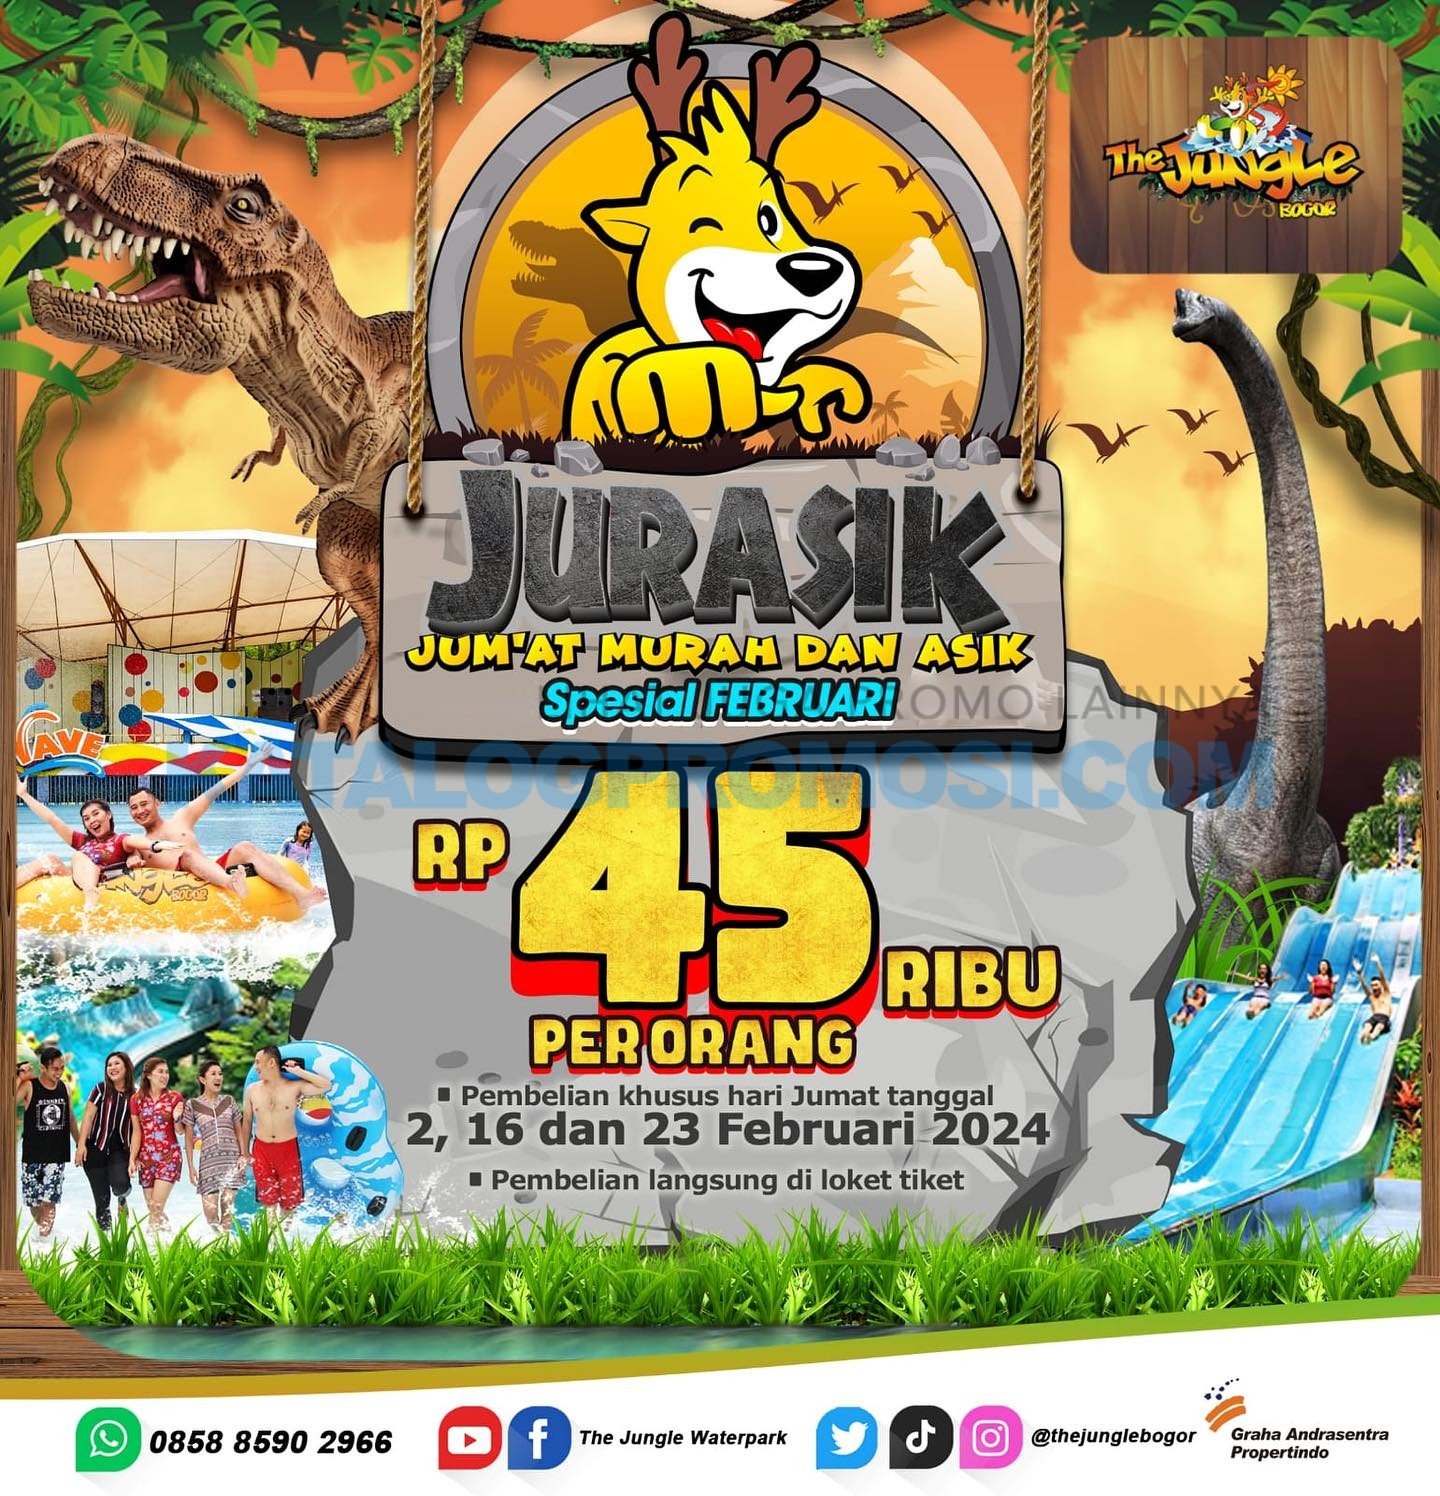 Promo THE JUNGLE JURASIK - Jum’at Murah Dan Asyik ! Harga Tiket mulai Rp. 45RIBU per orang berlaku  di tiap jumat di bulan Februari 2024 (2,16,23 Februari 2024)